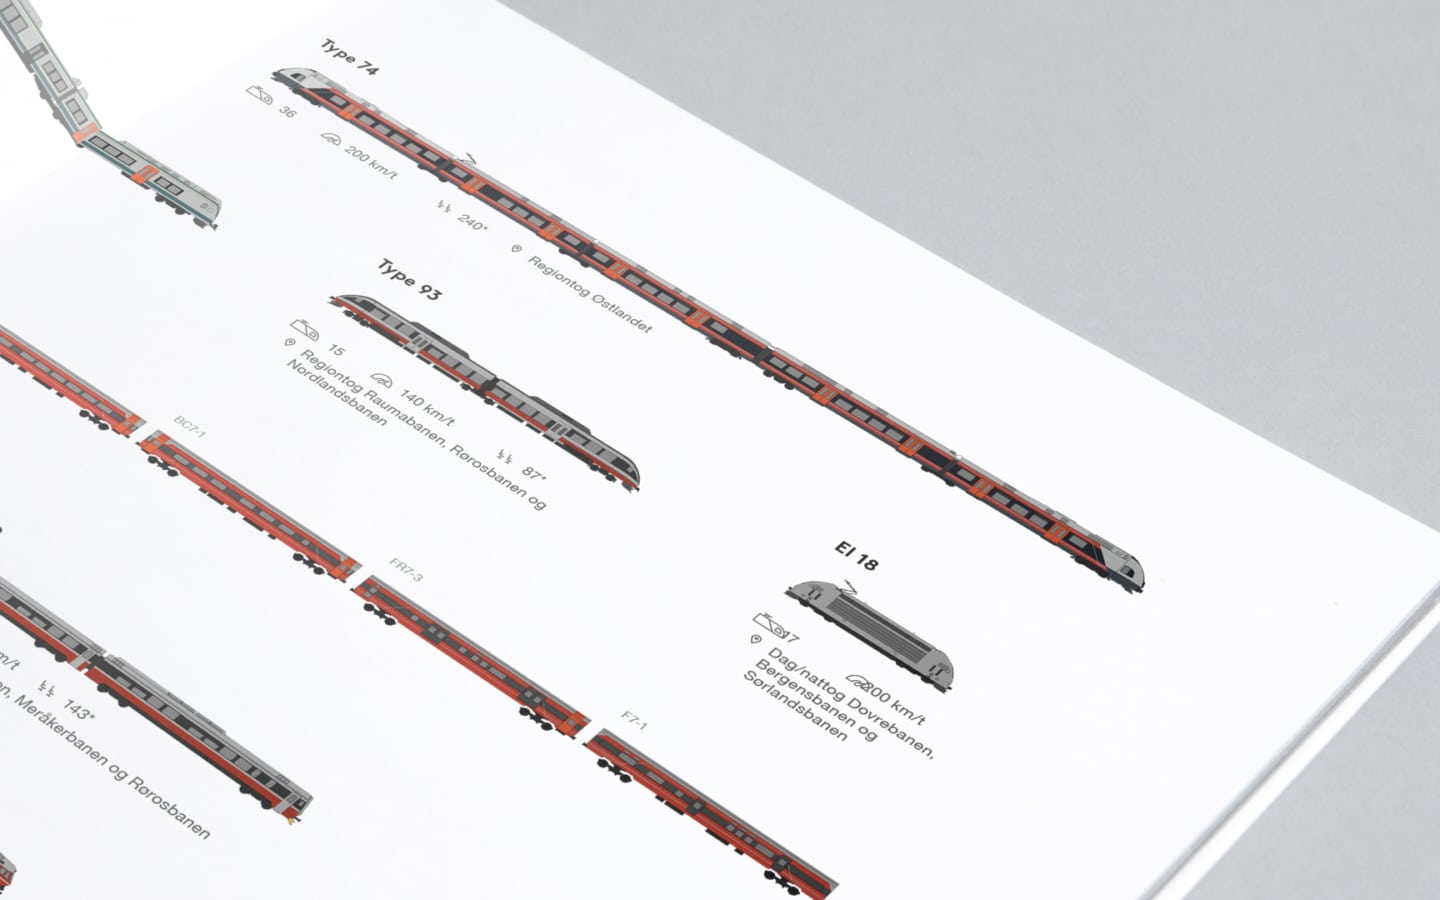 Detaljfoto av oppslag i årsrapport som viser illustrasjoner av tog.